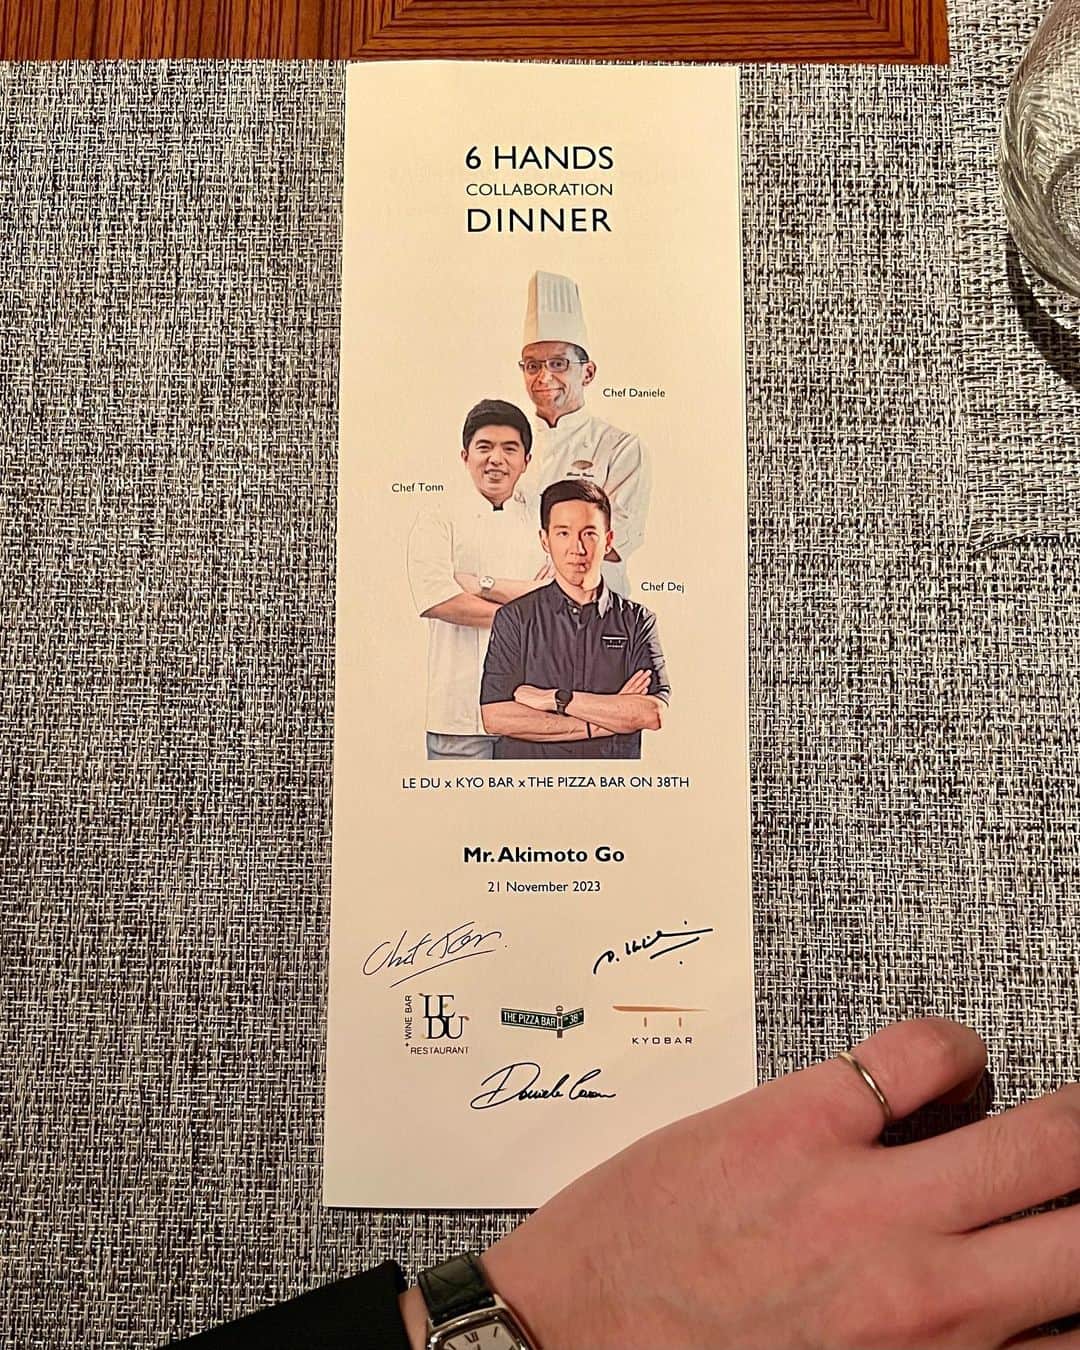 GO AKIMOTOのインスタグラム：「・・・ @mo_tokyo   マンダリン オリエンタル 東京のイタリアンダイニング "ケシキ" にて開催された一夜限りのコラボレーションディナー  6 HANDS COLLABORATION DINNER LE DU × KYO BAR × THE PIZZA BAR ON 38TH  Asia's 50 Best Restaurants 2023で1位に輝き、またミシュラン1つ星を獲得している "Le Du" オーナー兼エグゼクティブシェフのトン氏による一皿目から完全にノックアウト  我らが "The Pizza Bar on 38th" エグゼクティブシェフのダニエレの安定感あるシグネチャーピッツァに、エスニックな要素がプラスされたコラボレーションピッツァにも感動しました  極め付けは、La Liste 2023でPatry of the Yearを受賞した "Kyo Bar" ペストリーシェフのデジ氏によるセンセーショナルなデザートたち 食後のプティフルまで驚きの連続で忘れられないダイニング体験となりました  #mo_go #mandarinorientaltokyo #motokyo #mandarionoriental #ImAfan #worldoffans  #マンダリンオリエンタル東京 #ブランドアンバサダー  ・・・・・・・・・・」